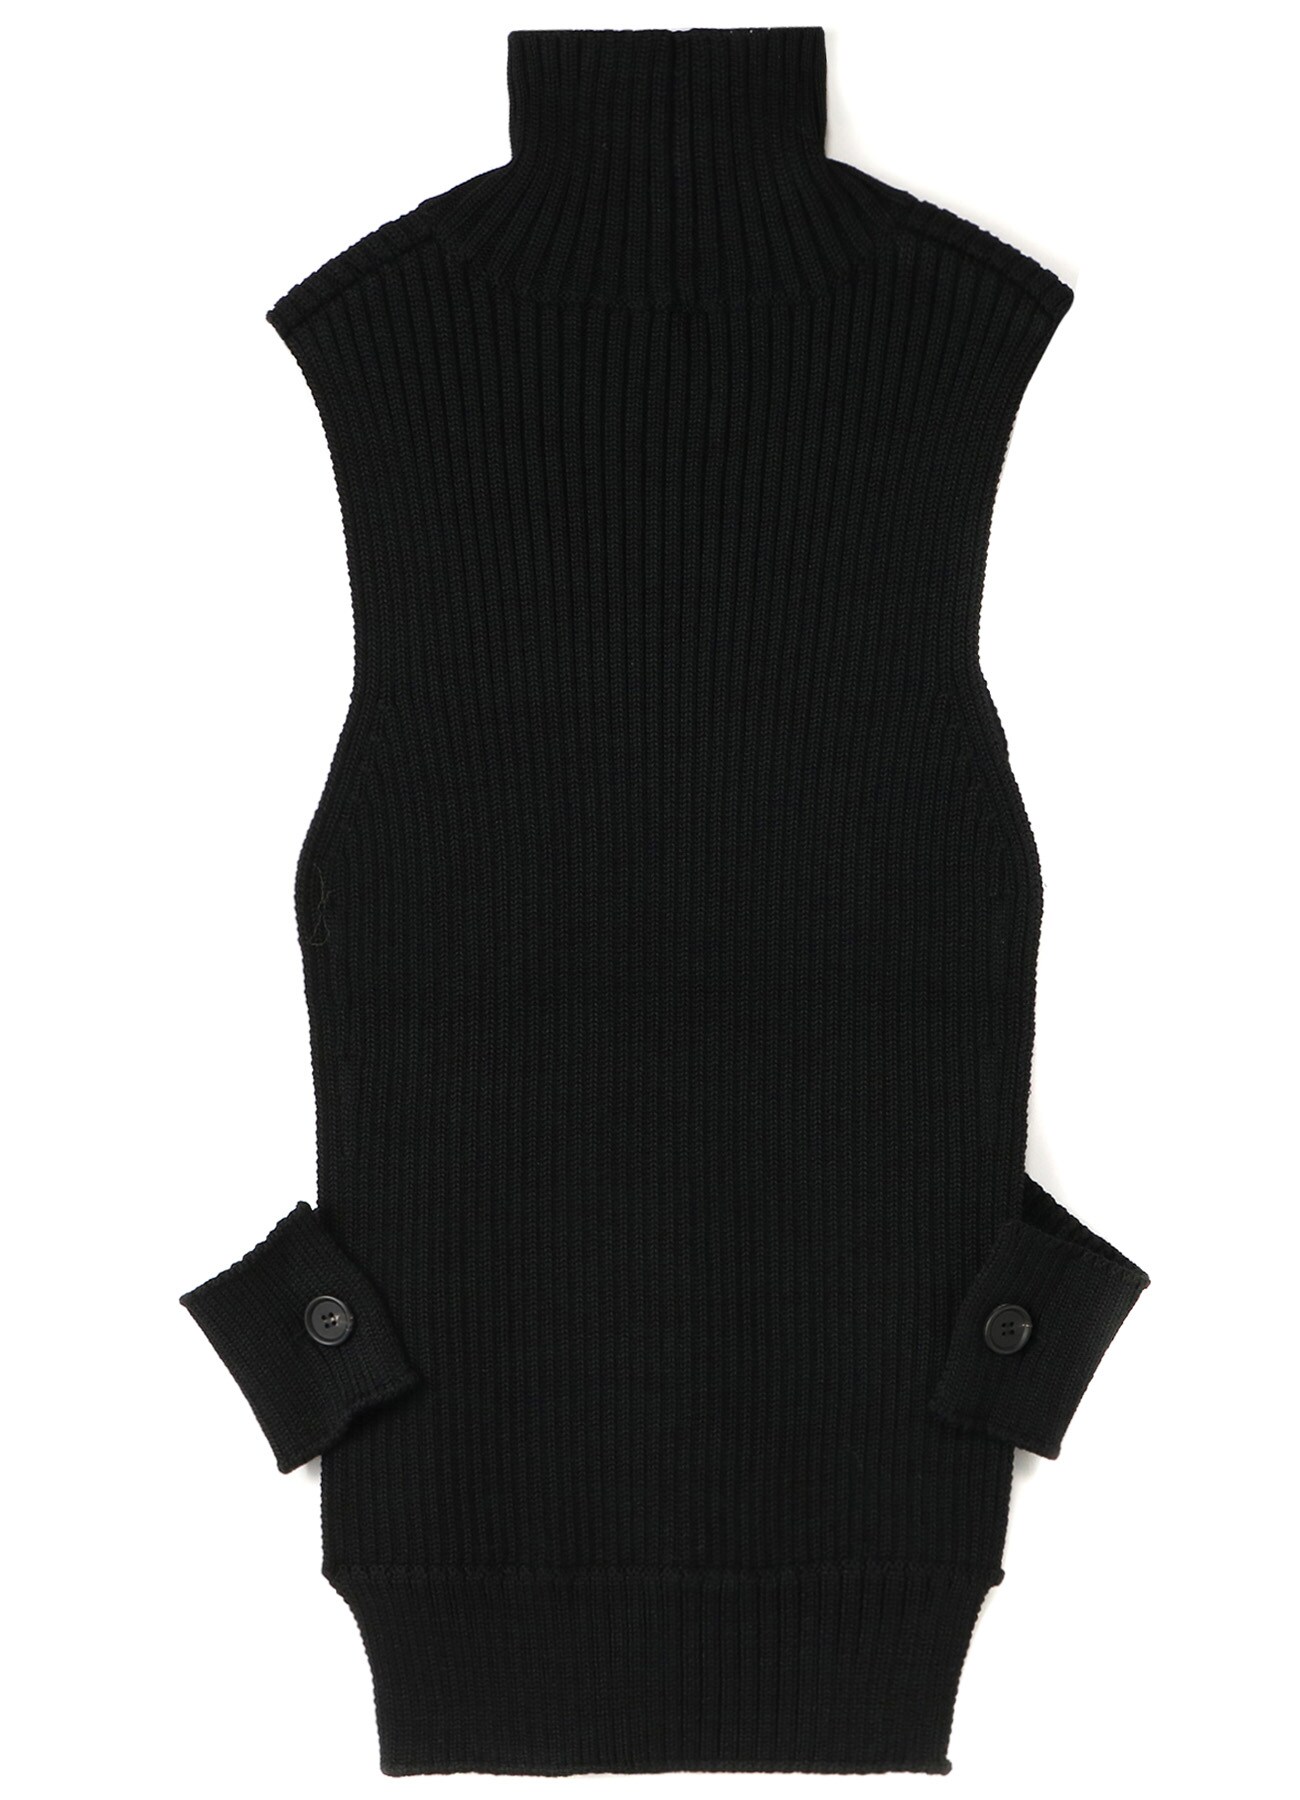 black high neck vest